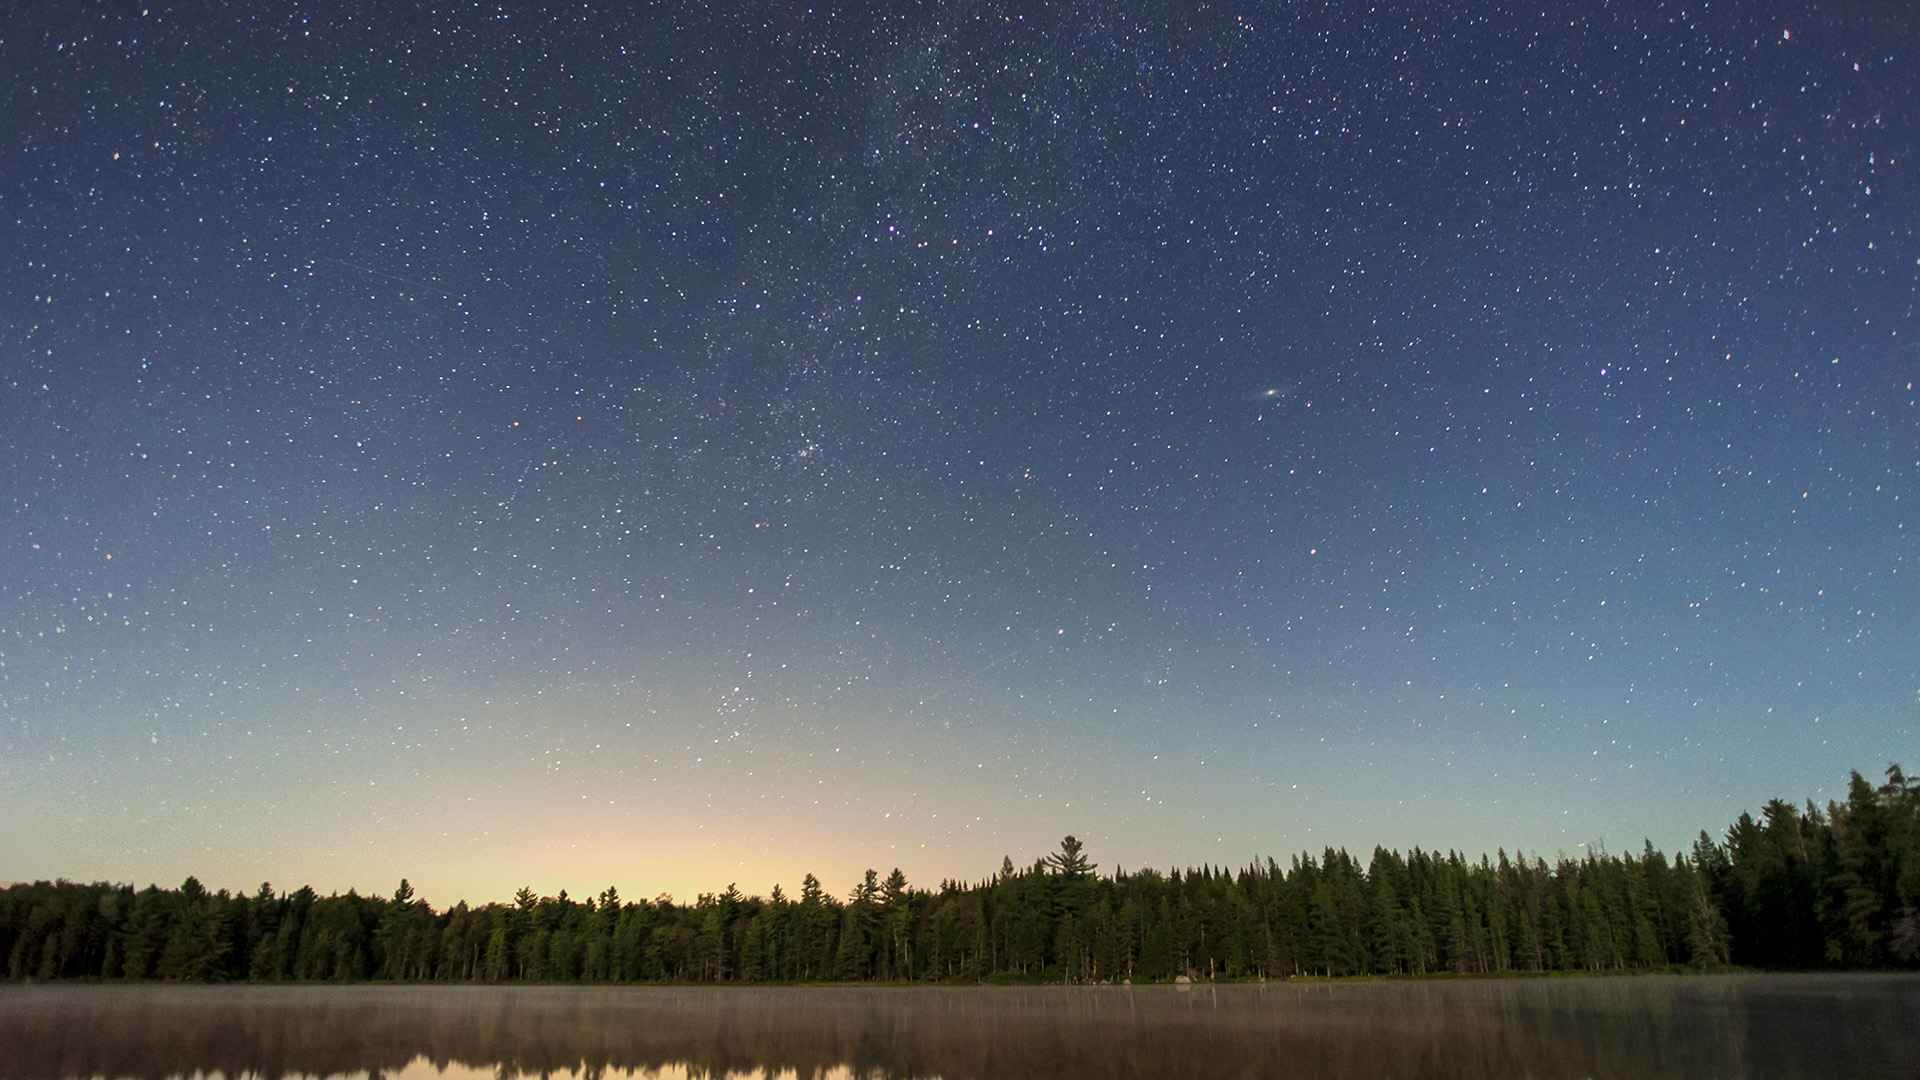 El bosque se refleja en un lago tranquilo por la noche, con un cielo estrellado encima, parte de la Vía Láctea y la galaxia de Andrómeda son visibles.